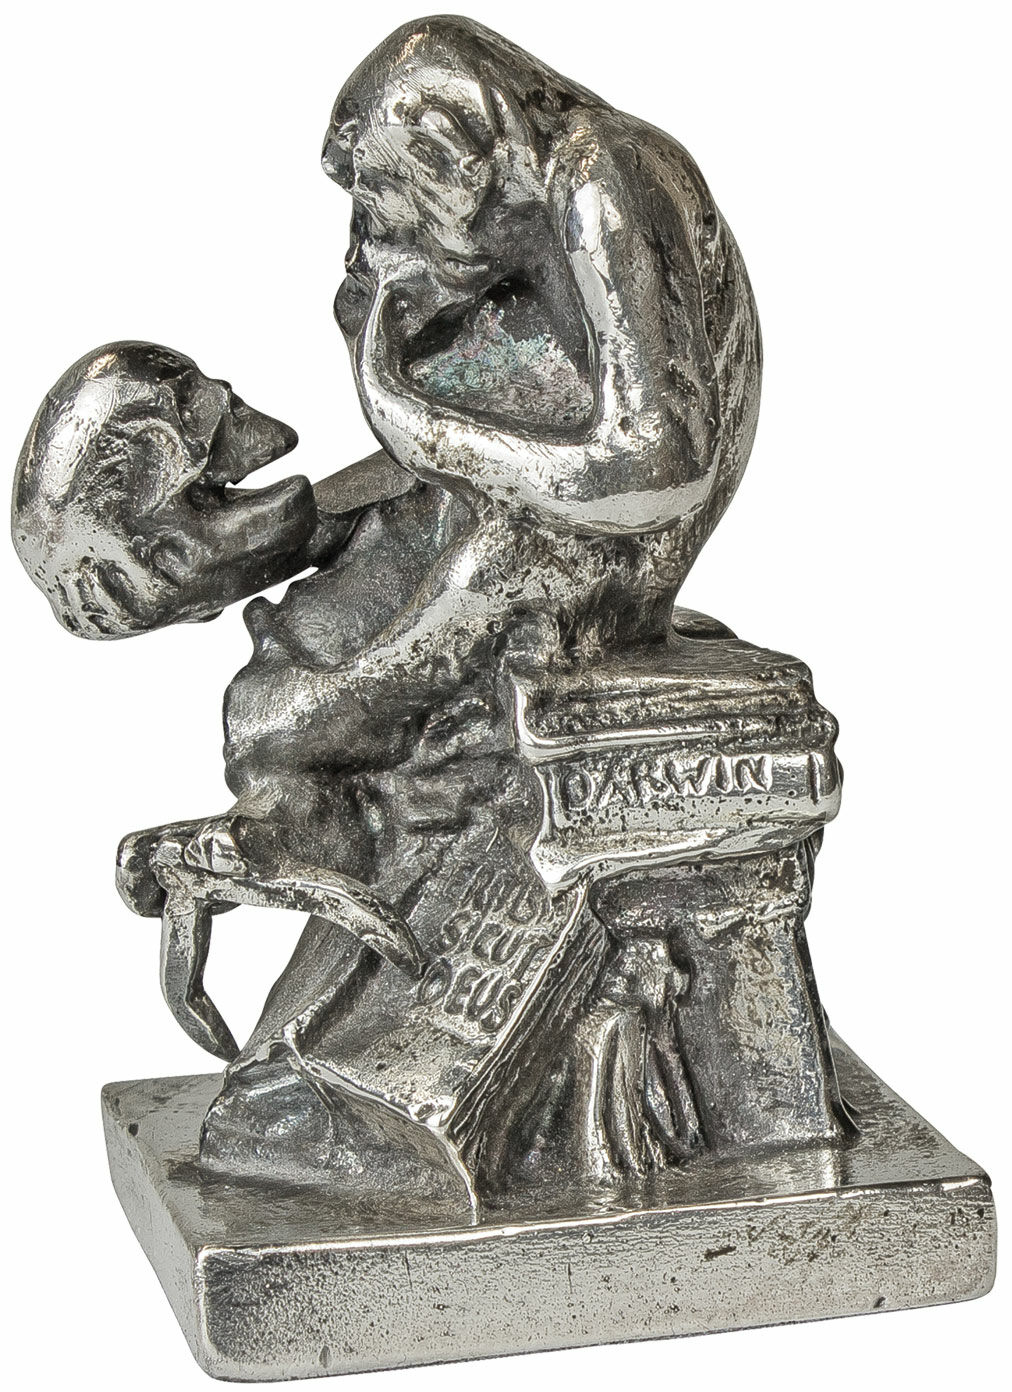 Skulptur "Affe mit Schädel" (1892-93), Version in Metallguss versilbert von Wolfgang Hugo Rheinhold